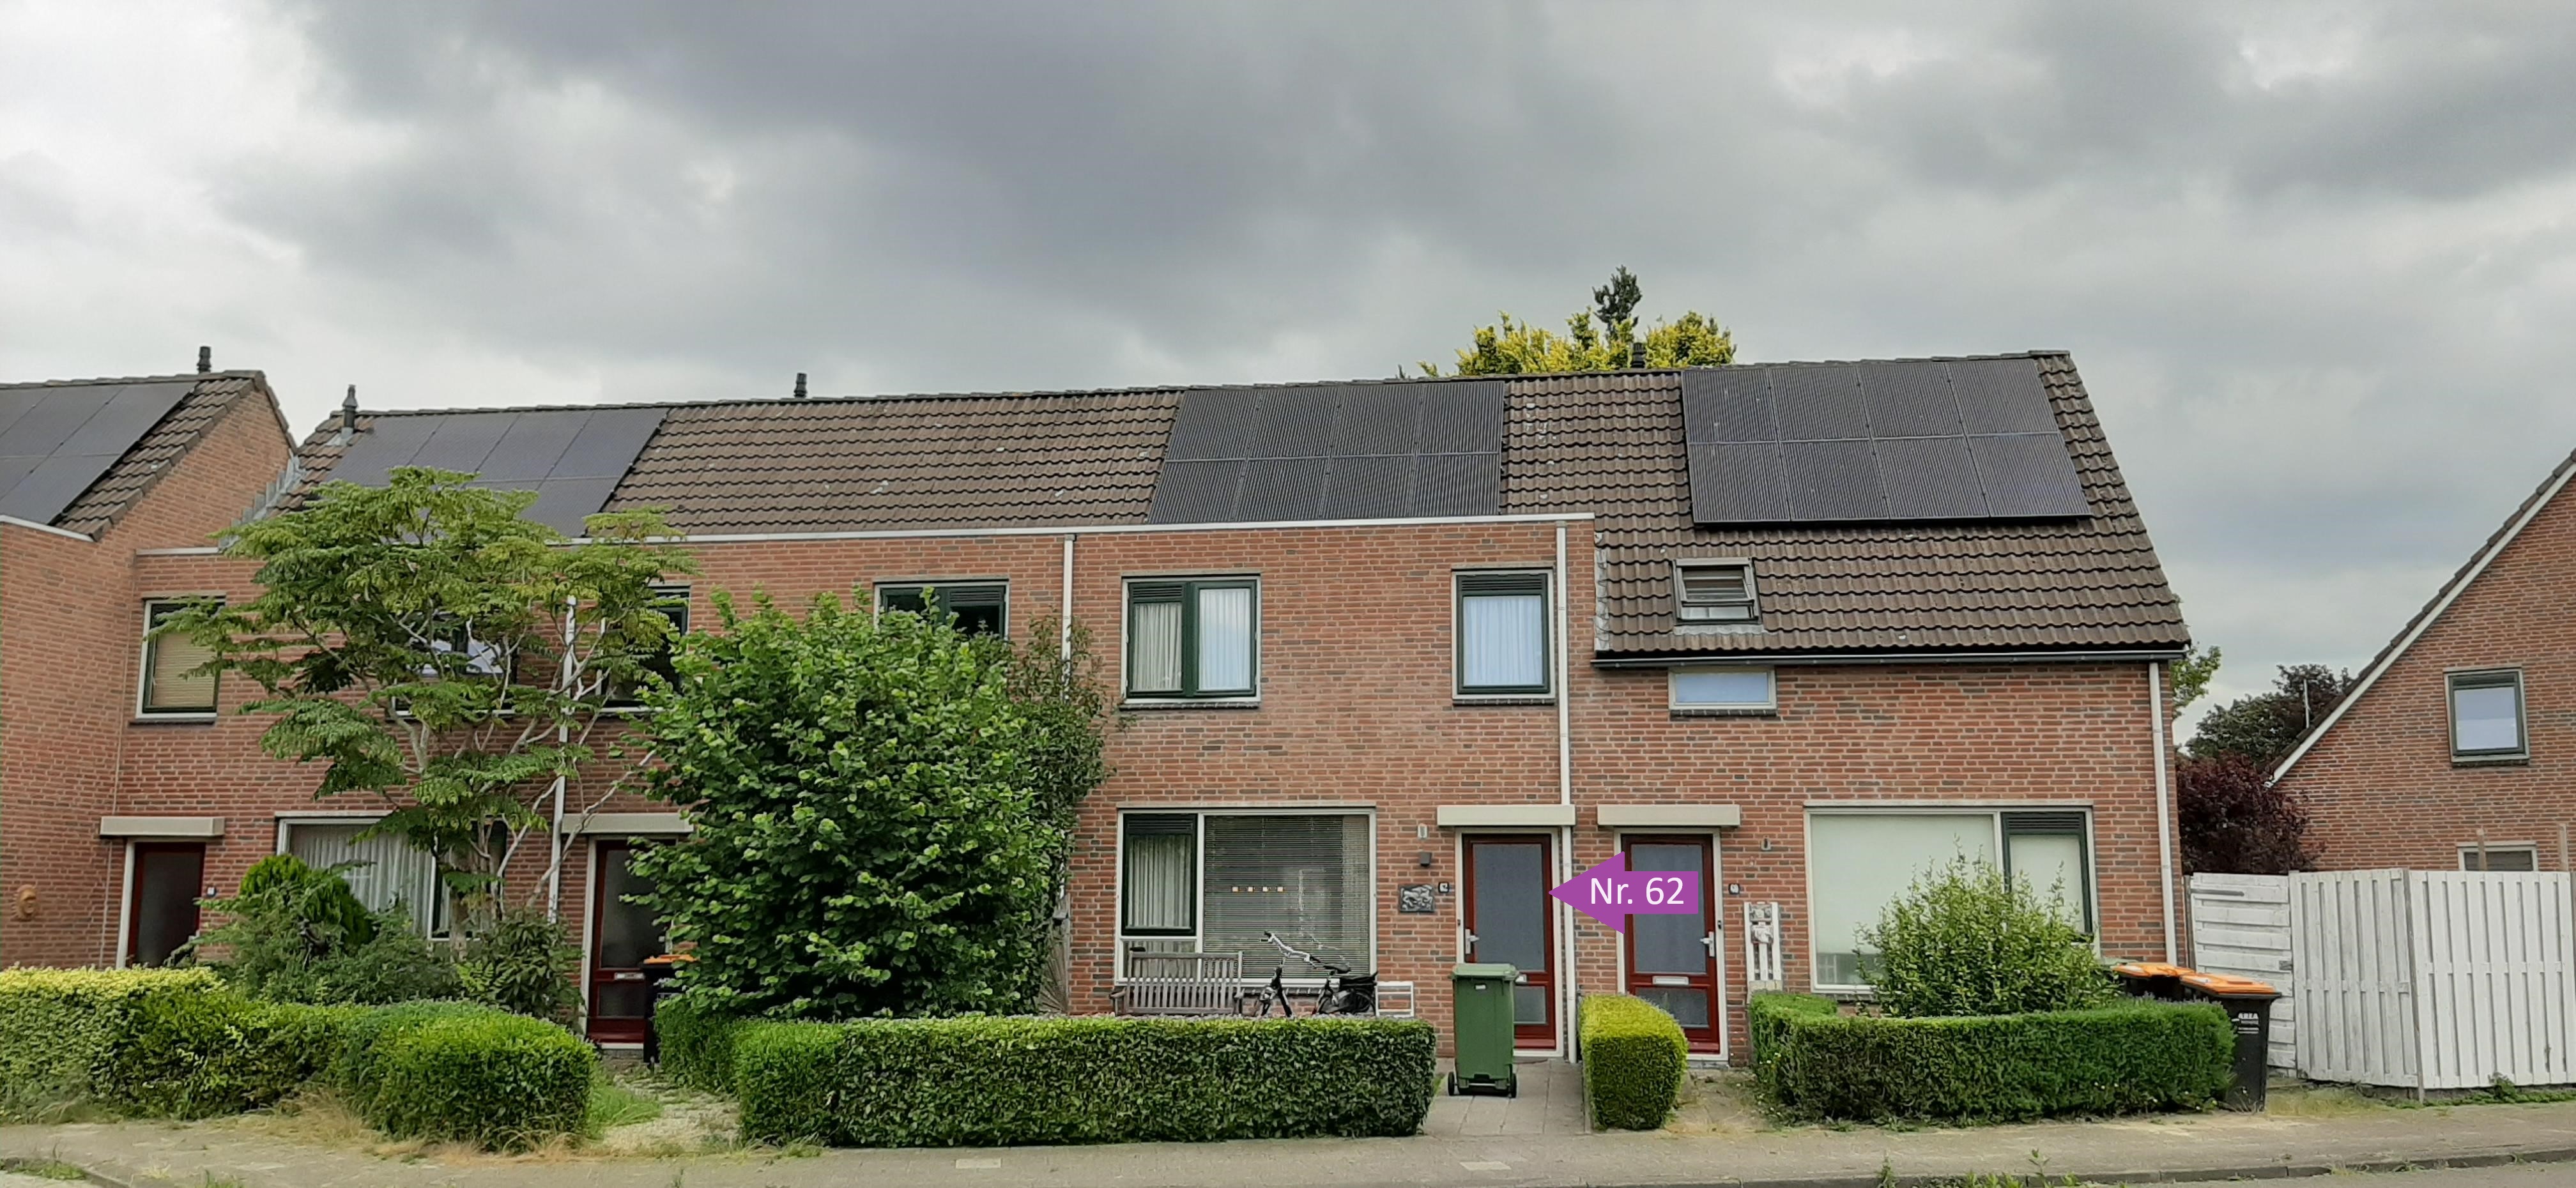 De Waring 62, 7908 LK Hoogeveen, Nederland